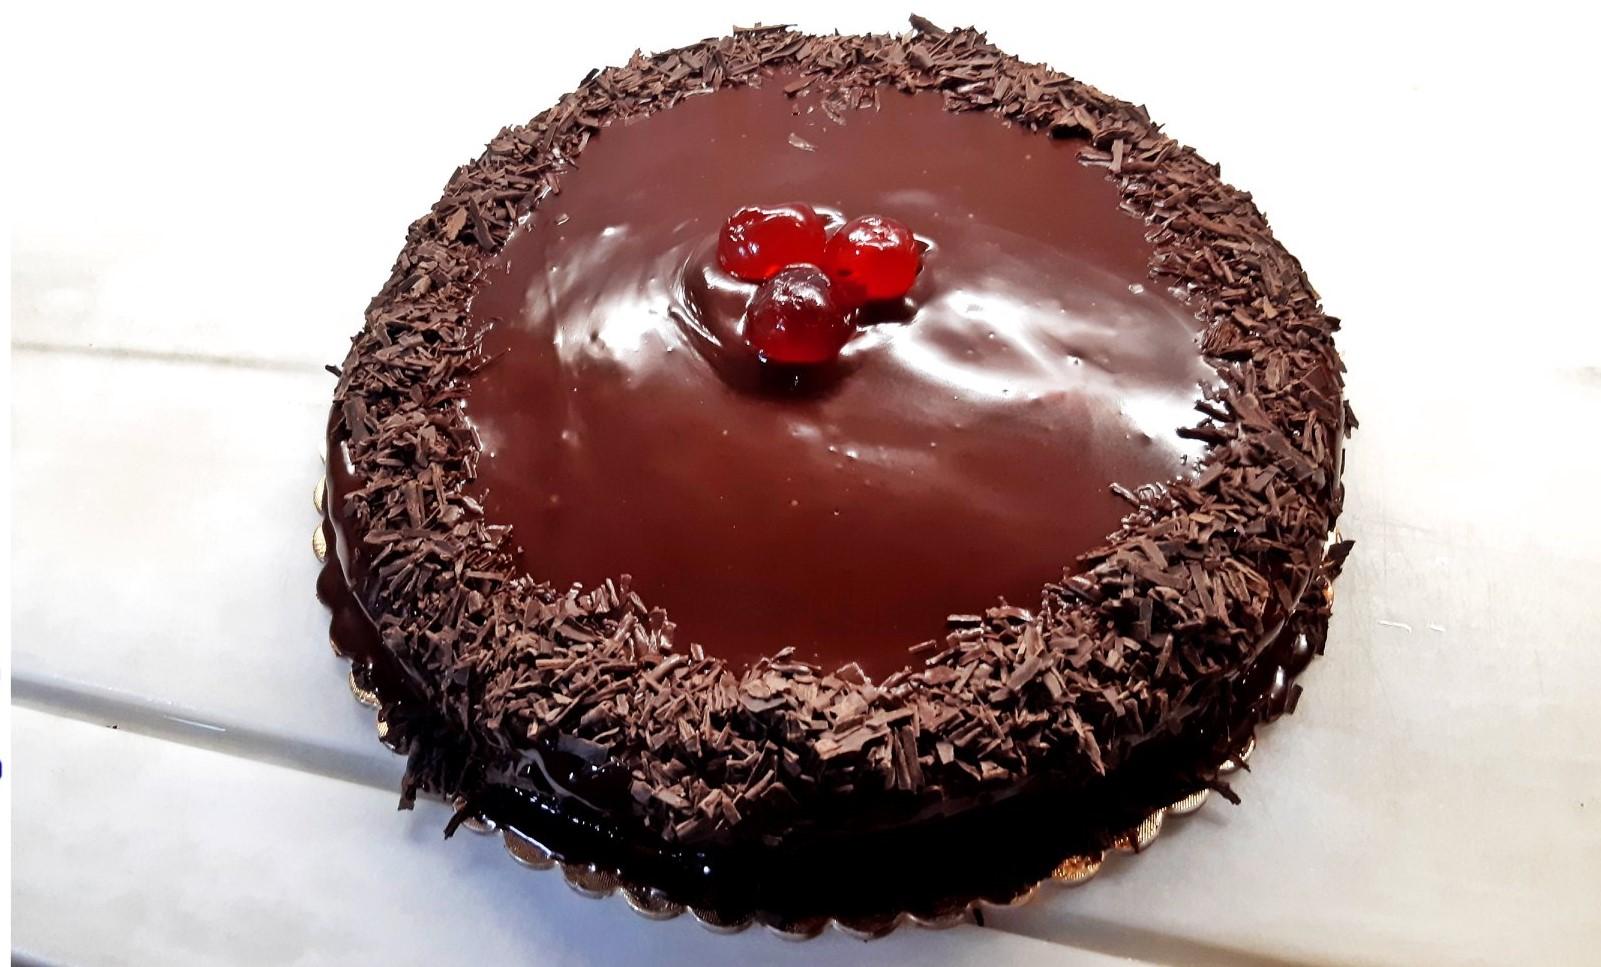 Σοκολατένιο κέικ με δύο βασικά υλικά